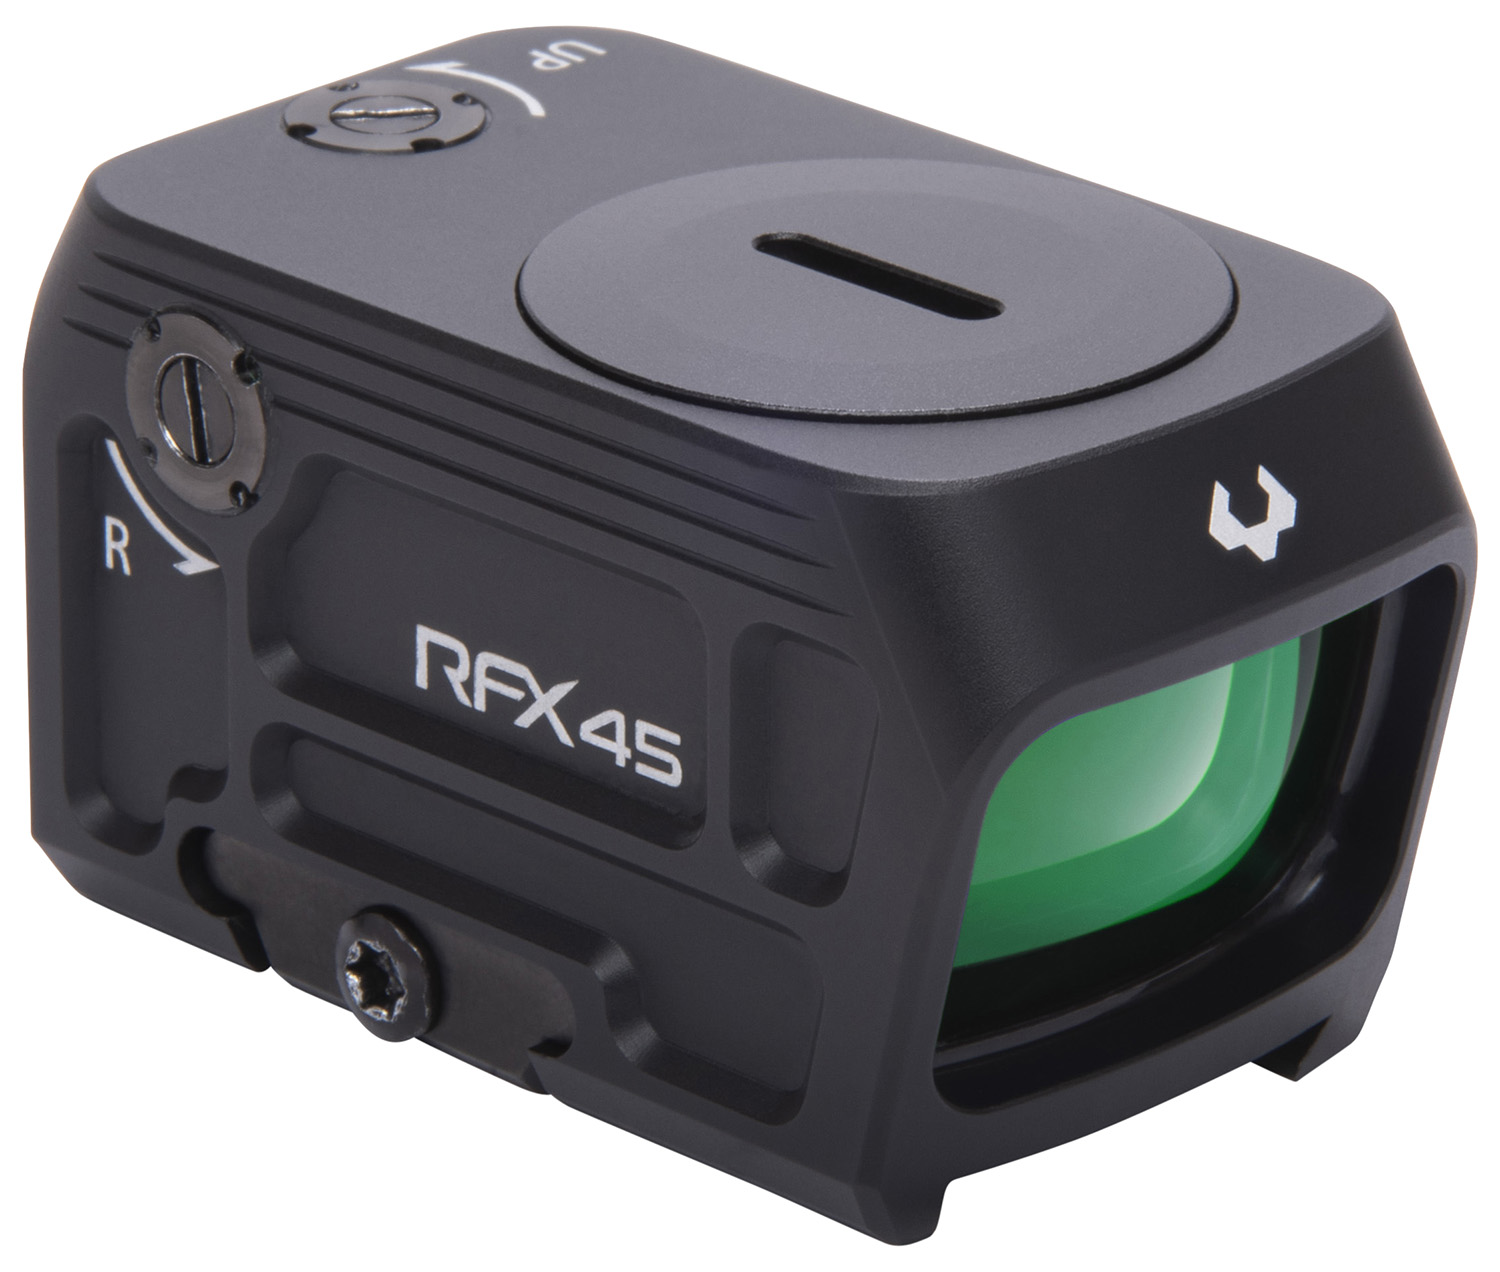 Viridian 9810053 RFX45 Green Dot Reflex Sight Black | 24 X 15.5mm 5 MOA Green Dot